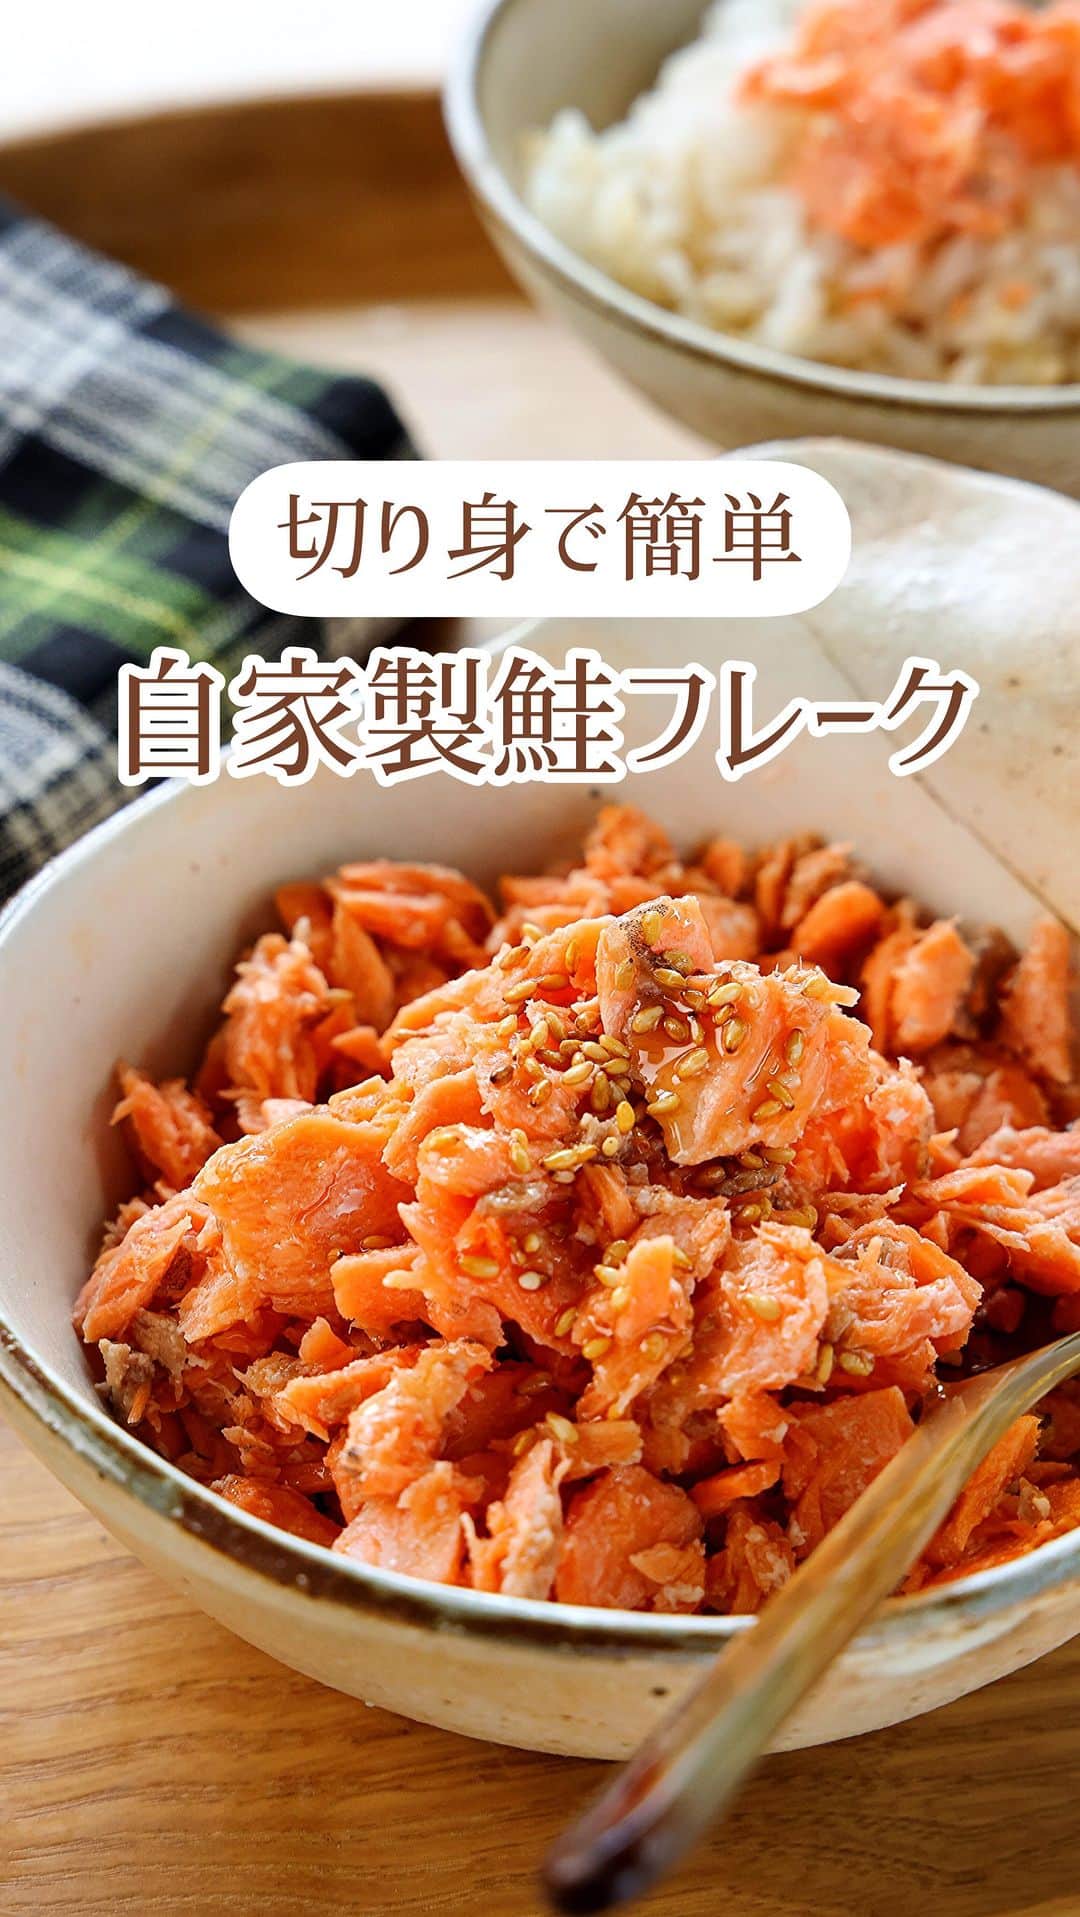 Mizuki【料理ブロガー・簡単レシピ】のインスタグラム：「・フライパンで手軽にできる💕 ⁡ ［#レシピ ］ ーーーーーーーーーーーーーーーー 切り身で簡単！自家製鮭フレーク ーーーーーーーーーーーーーーーー ⁡ ⁡ ⁡ おはようございます☺️ ⁡ 今日ご紹介させていただくのは \ 自家製鮭フレーク / ⁡ 鮭の切り身を使って フライパン1つでできる簡単レシピ💕 工程も味付けもシンプルに 手作りならではの やさしい味わいに仕上げました😋 ⁡ 塩加減の調節や香り付けもできるので 詳しくはポイントをご覧くださいね✨ ⁡ ⁡ ⁡ ⋱⋰ ⋱⋰ ⋱⋰ ⋱⋰ ⋱⋰ ⋱⋰ ⋱⋰ 📍簡単・時短・節約レシピ更新中  Threadsもこちらから▼ @mizuki_31cafe ⁡ 📍謎の暮らし＆変なライブ垢 @mizuki_kurashi ⋱⋰ ⋱⋰ ⋱⋰ ⋱⋰ ⋱⋰ ⋱⋰ ⋱⋰ ⁡ ⁡ ⁡ ＿＿＿＿＿＿＿＿＿＿＿＿＿＿＿＿＿＿＿ 【作りやすい量】 生鮭(骨なし)...2〜3切れ(200g) 水...50ml ⚫︎酒...大2 ⚫︎みりん...大1 ⚫︎塩...小1/3〜 ごま...適量 ⁡ 1.フライパンに鮭を並べて水を注ぎ、蓋をして中火にかけ、6分程蒸し焼きにして火を通す。 2.火を止め、鮭の皮を取り除き、木べらで身をざっくりとほぐす。 3.⚫︎を加えて中火にかけ、汁気がほとんどなくなるまで炒め、仕上げにごまを振る。 ￣￣￣￣￣￣￣￣￣￣￣￣￣￣￣￣￣￣￣ ⁡ ⁡ 《ポイント》 ♦︎骨付きの切り身を使う場合は取り除いてから調理すると◎又は、皮を取るタイミングでもOK！ ♦︎やさしい味わいです♩濃い目に仕上げたい場合は最後に塩を加えて調えてください♩ ♦︎工程2で水分が多く残っている場合は、拭き取ってから調味料を加えてください♩ ♦︎鮭のにおいが気になる場合→調味料にしょうゆを少し足したり、仕上げにごま油を加えて香りをつけてもおいしいです♩ ♦︎冷蔵3日、冷凍1ヶ月ほど保存できます♩ ⁡ ⁡ ⁡ ⁡ ⁡ ⁡ ⋱⋰ ⋱⋰ ⋱⋰ ⋱⋰ ⋱⋰ ⋱⋰ ⋱⋰  愛用している調理器具・器など   #楽天ROOMに載せてます ‎𐩢𐩺  (ハイライトから飛べます🕊️) ⋱⋰ ⋱⋰ ⋱⋰ ⋱⋰ ⋱⋰ ⋱⋰ ⋱⋰ ⁡ ⁡ ⁡ ⁡ ⁡ ✼••┈┈┈┈┈••✼••┈┈┈┈┈••✼ 今日のごはんこれに決まり！ ‎𓊆#Mizukiのレシピノート 500品𓊇 ✼••┈┈┈┈┈••✼••┈┈┈┈┈••✼ ⁡ ˗ˏˋ おかげさまで25万部突破 ˎˊ˗ 料理レシピ本大賞準大賞を受賞しました✨ ⁡ 6000点の中からレシピを厳選し まさかの【500レシピ掲載】 肉や魚のメインおかずはもちろん 副菜、丼、麺、スープ、お菓子 ハレの日のレシピ、鍋のレシピまで 全てこの一冊で完結 𓌉◯𓇋 (全国の書店・ネット書店で発売中) ⁡ ⁡ ⁡ ⁡ ⁡ #自家製鮭フレーク #鮭フレーク #鮭レシピ #作り置き #常備菜 #鮭 #魚料理 #節約料理  #簡単料理  #時短料理 #mizukiレシピ  #時短レシピ #節約レシピ #簡単レシピ」